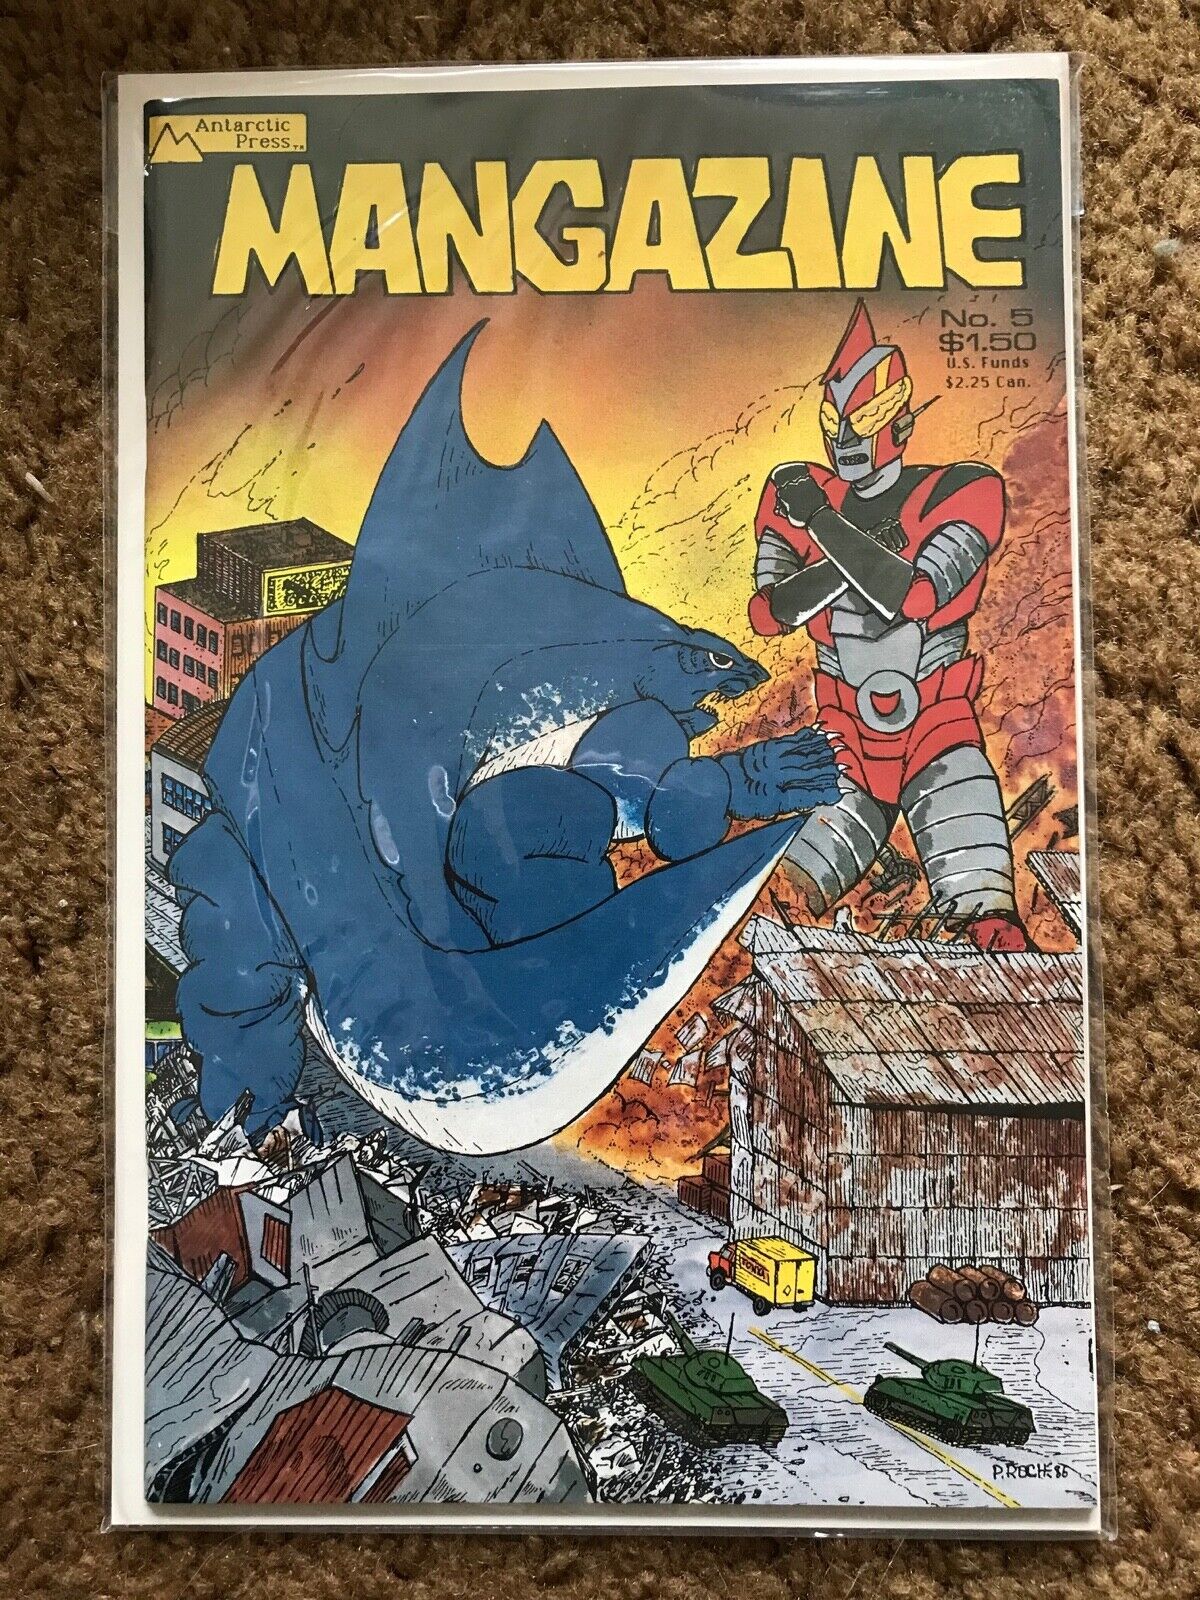 Mangazine #5 Antarctic Press Dec 1986 